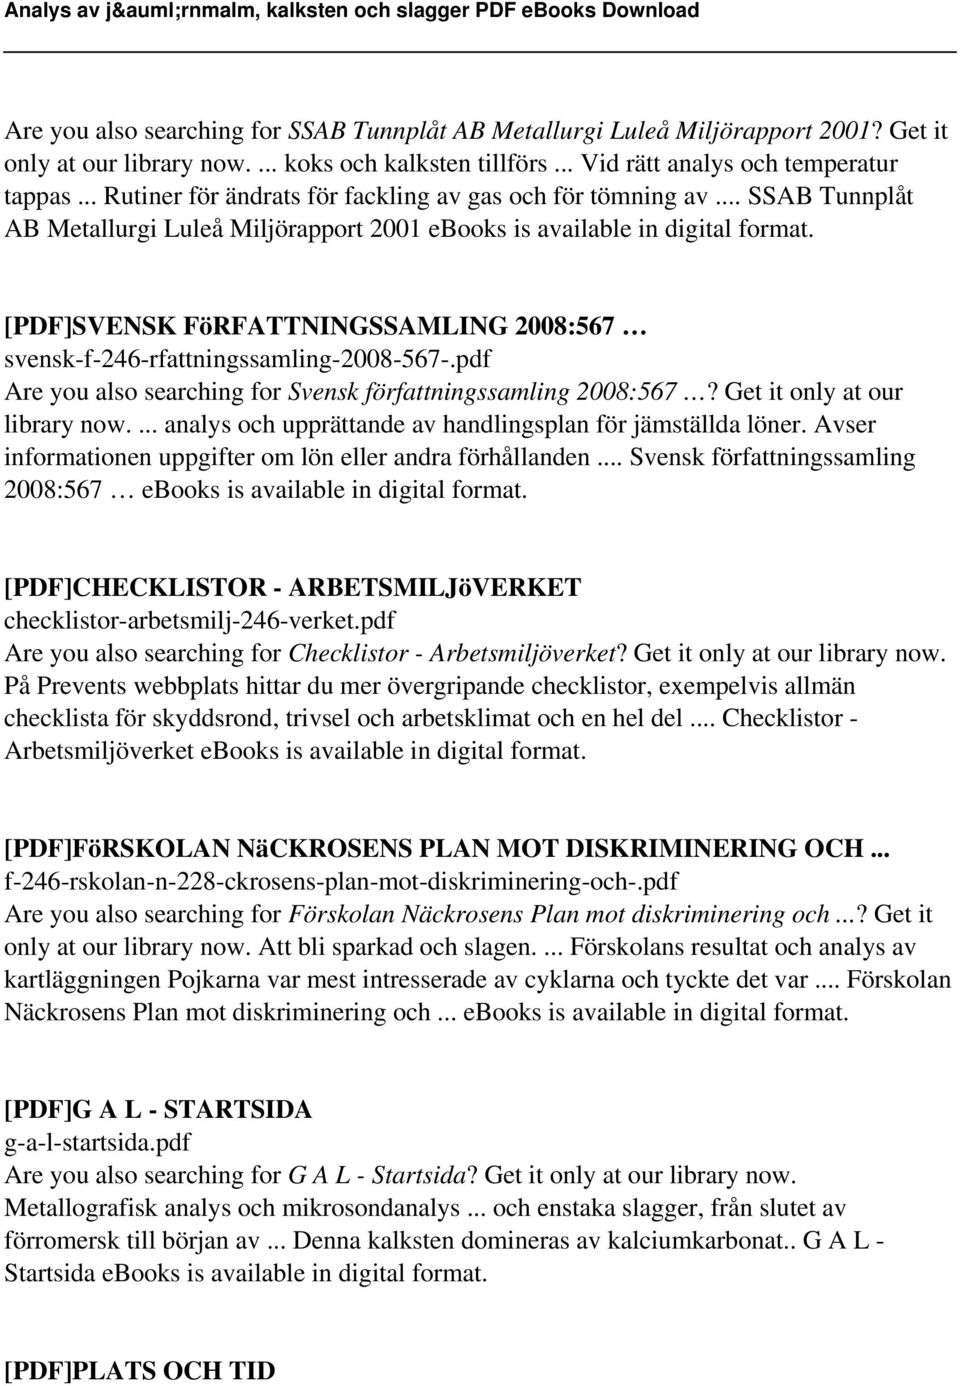 .. SSAB Tunnplåt AB Metallurgi Luleå Miljörapport 2001 ebooks is available in digital [PDF]SVENSK FöRFATTNINGSSAMLING 2008:567 svensk-f-246-rfattningssamling-2008-567-.